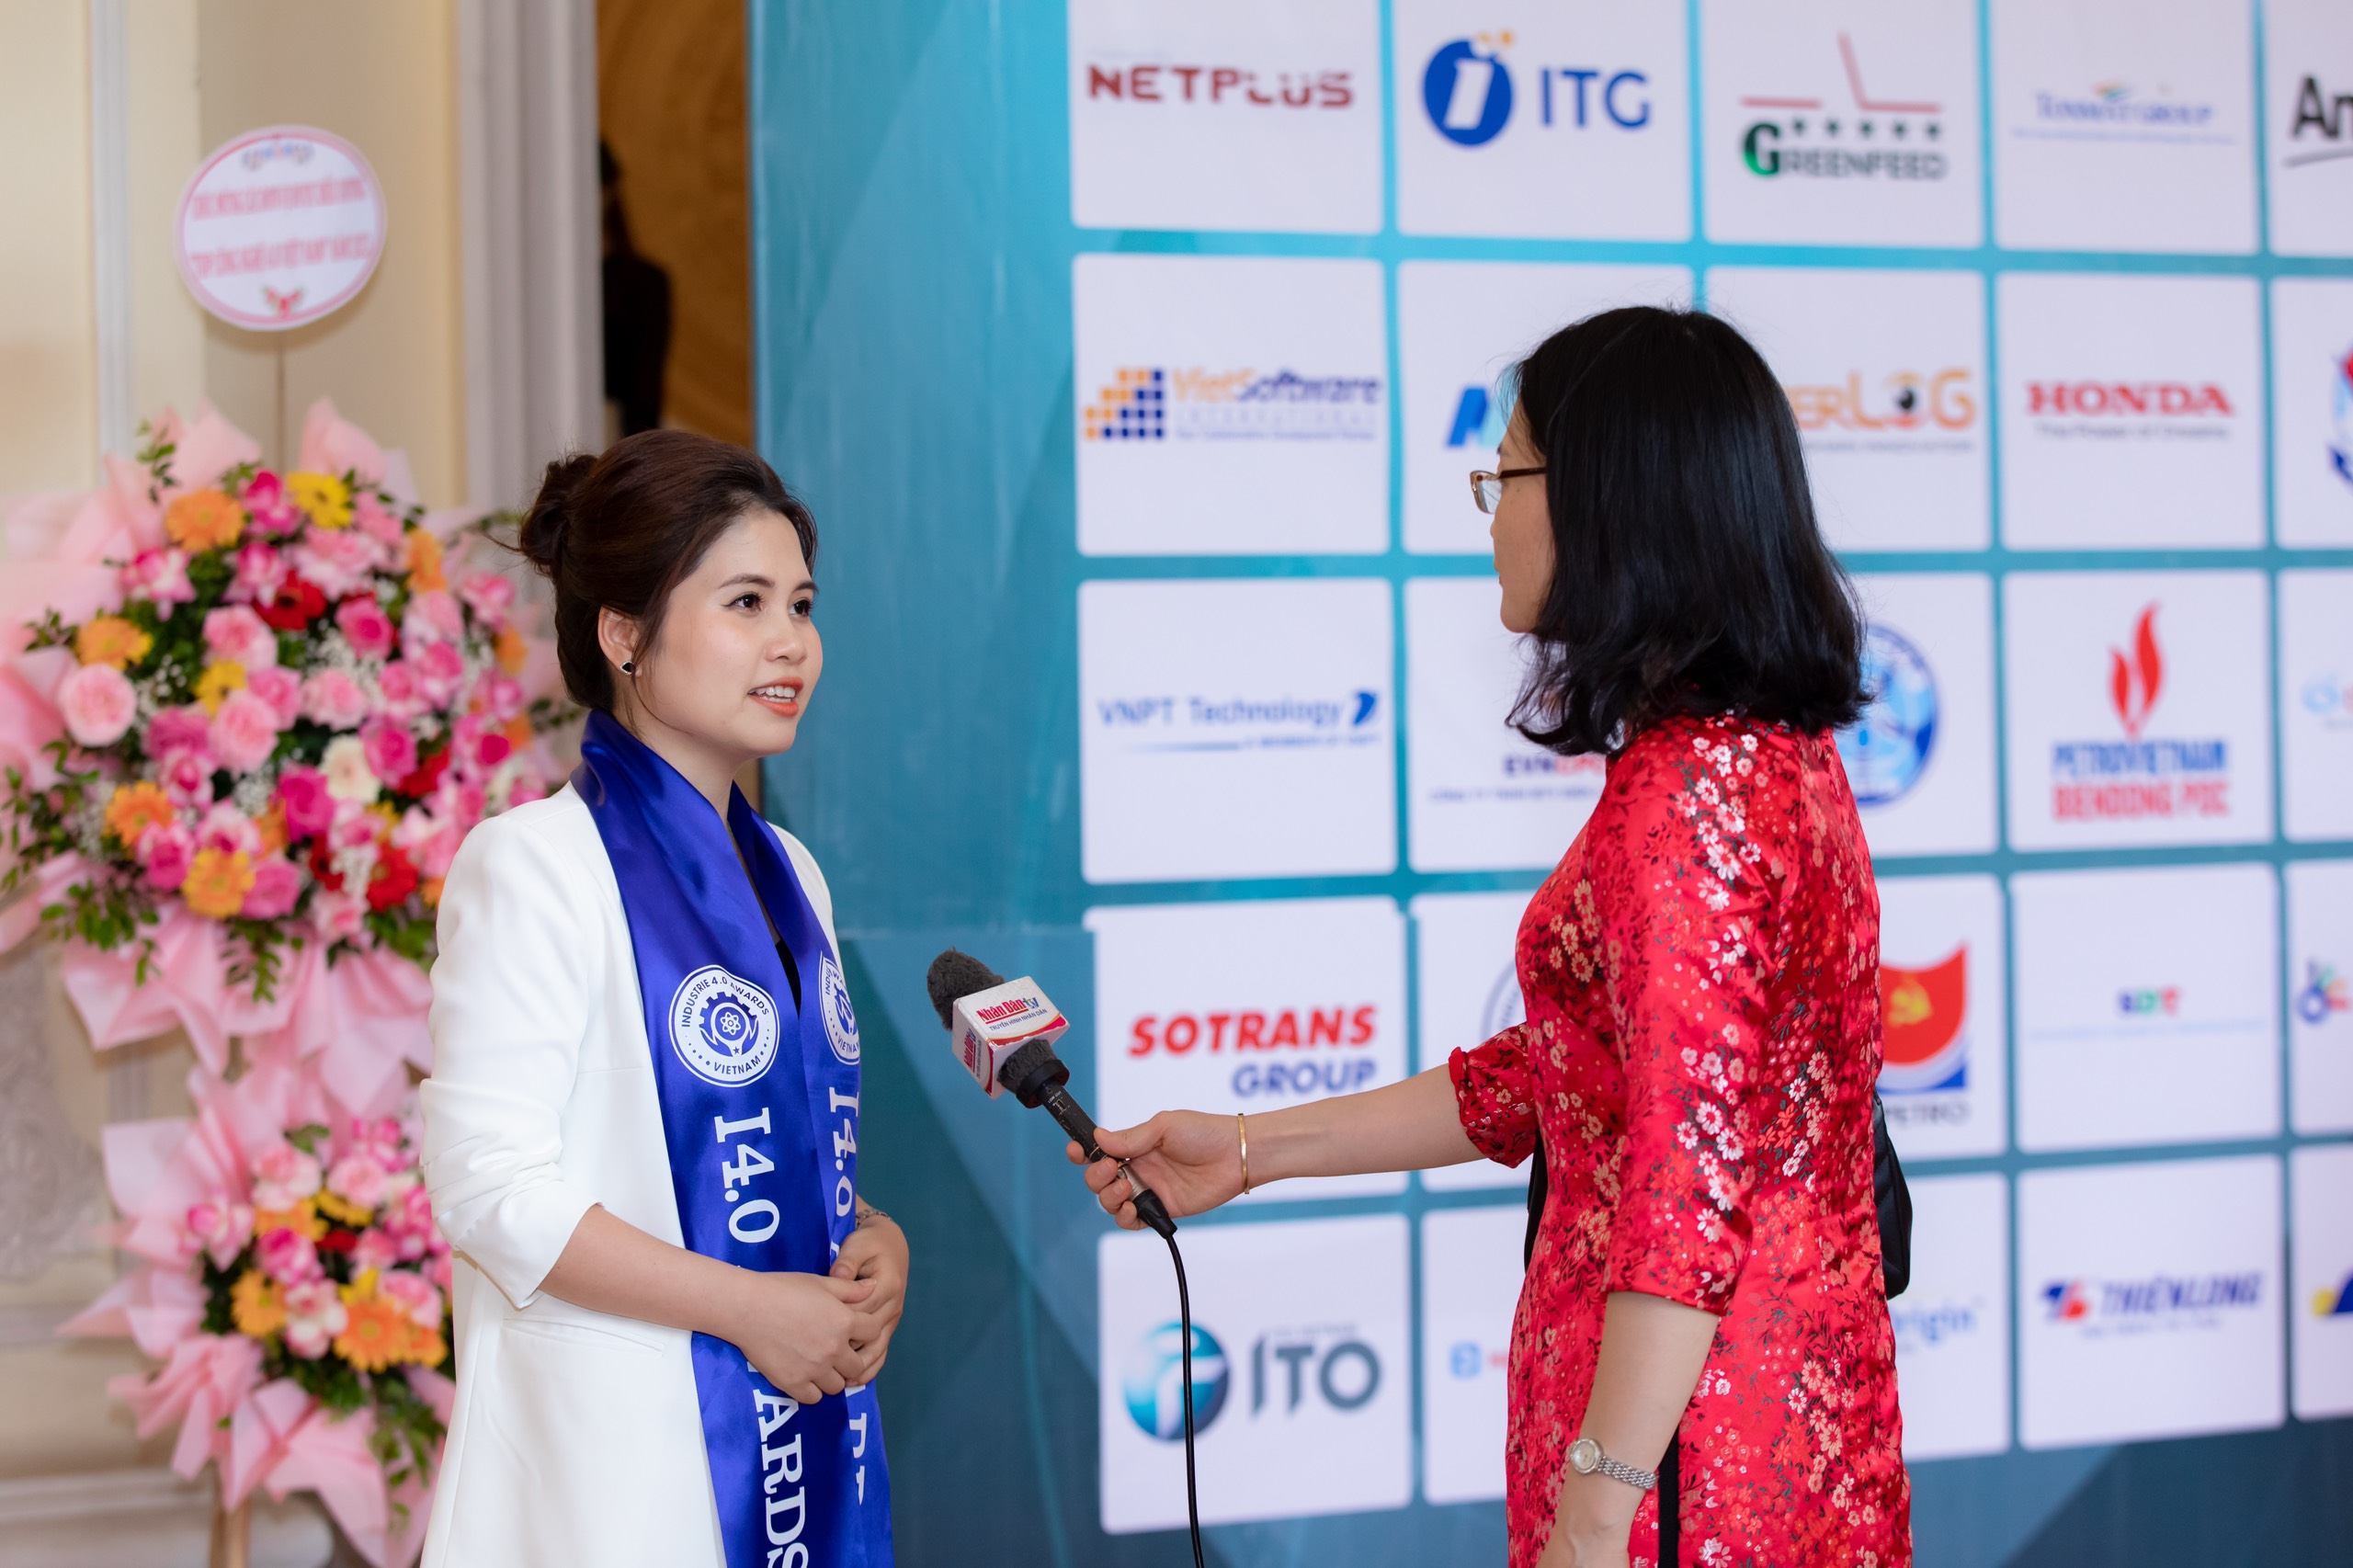 giải pháp 3S iFACTORY lần thứ hai được vinh danh tại lễ trao giải “Top Công nghiệp 4.0 Việt Nam - I4.0 Awards” 